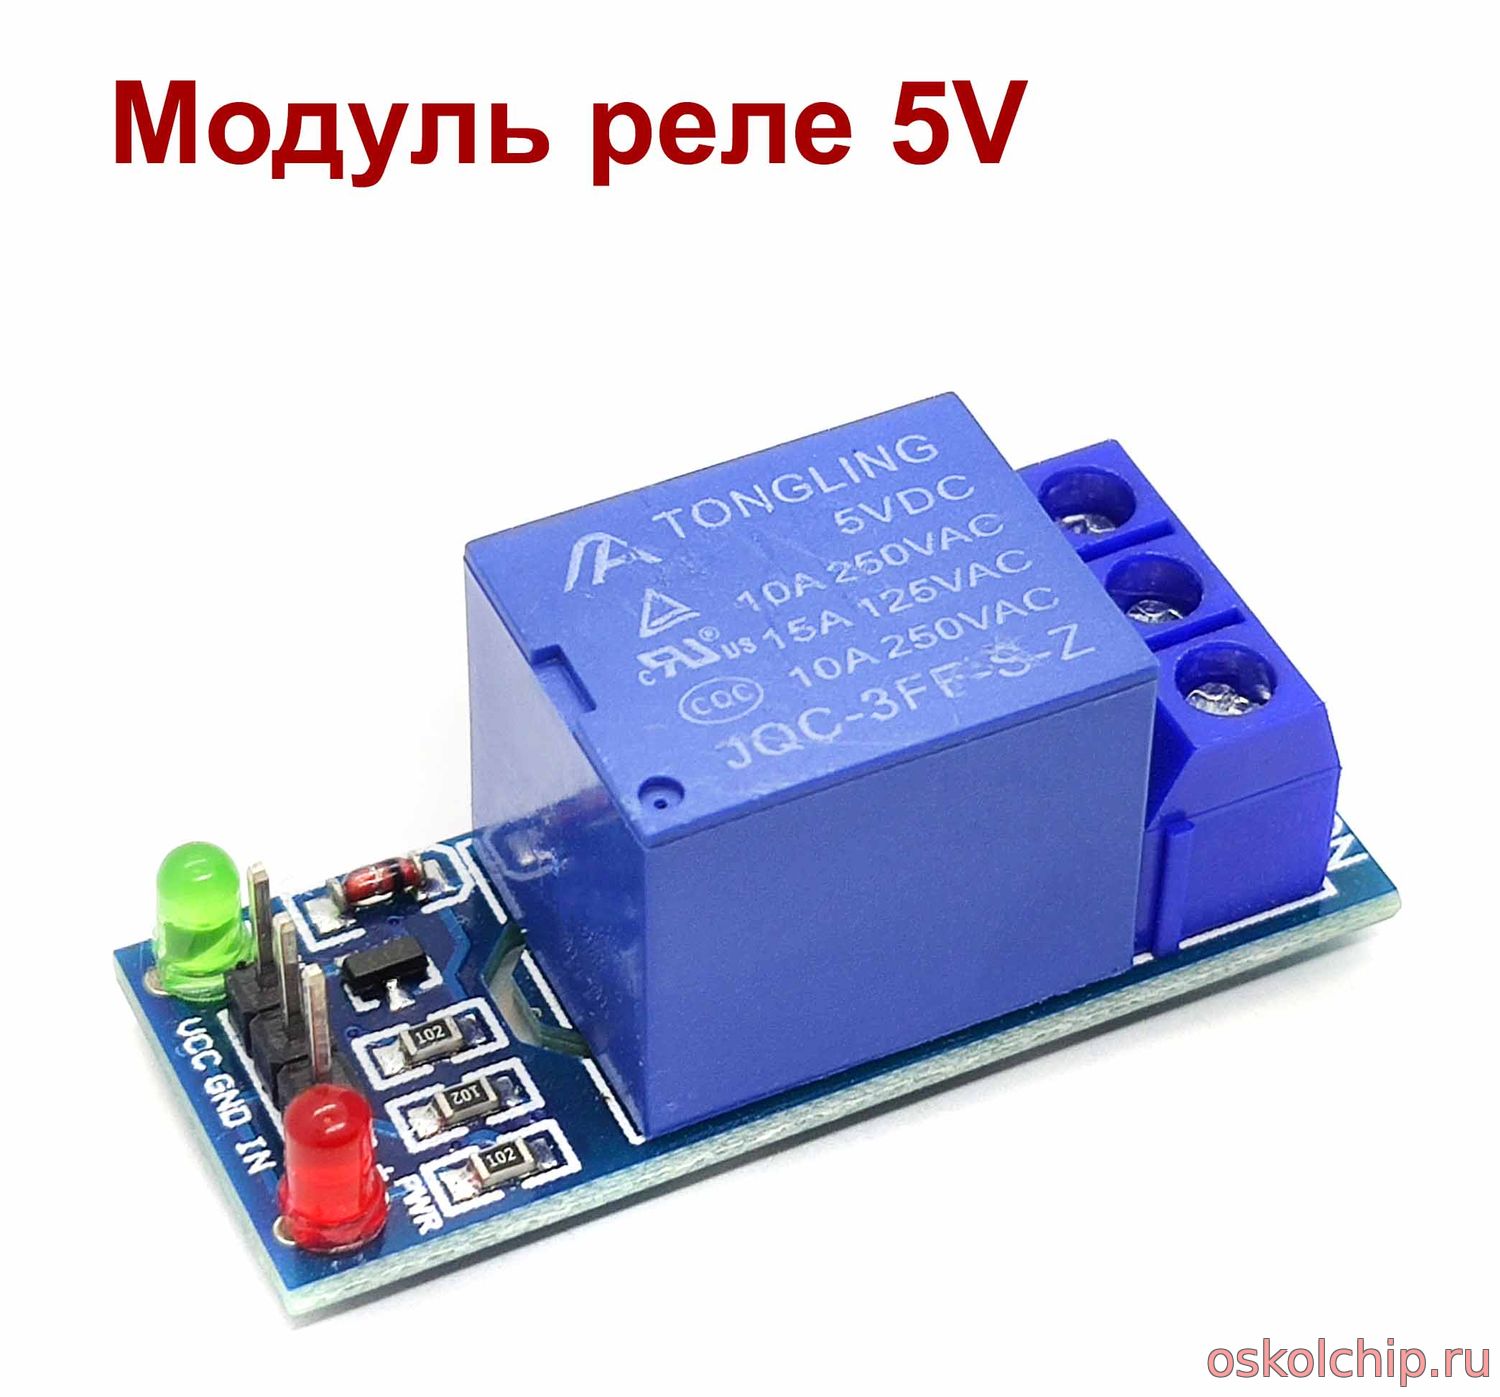 Модуль реле 5V 1 канал 10A  для МК, Arduino,STM, ESP